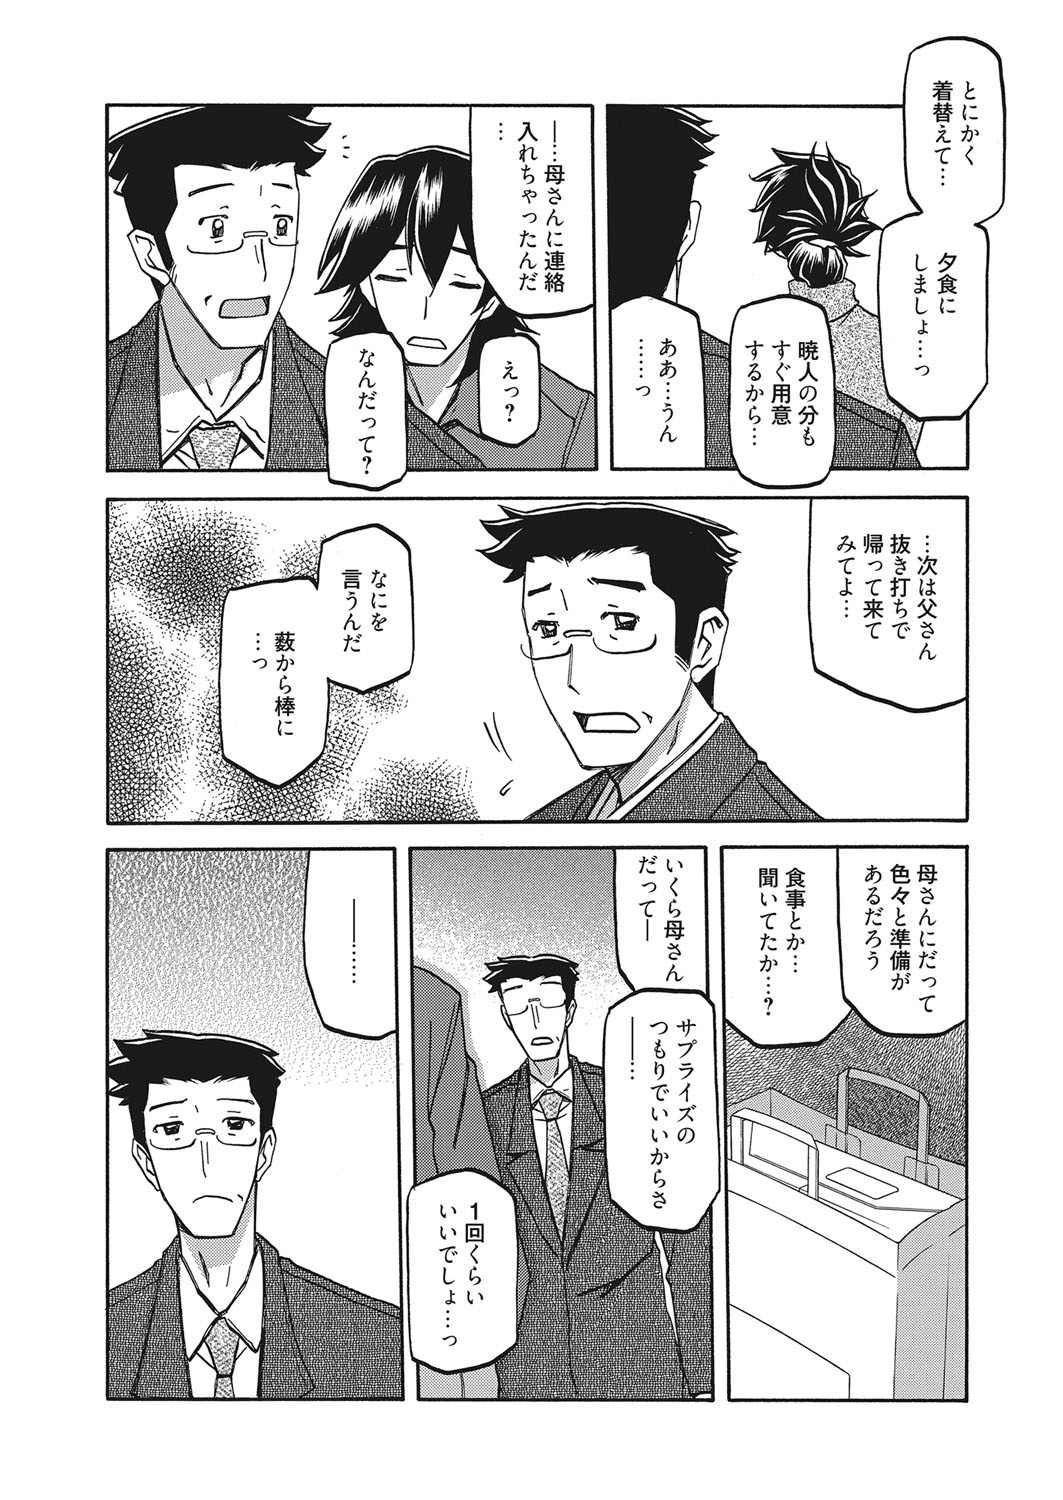 web 漫画ばんがいち Vol.7